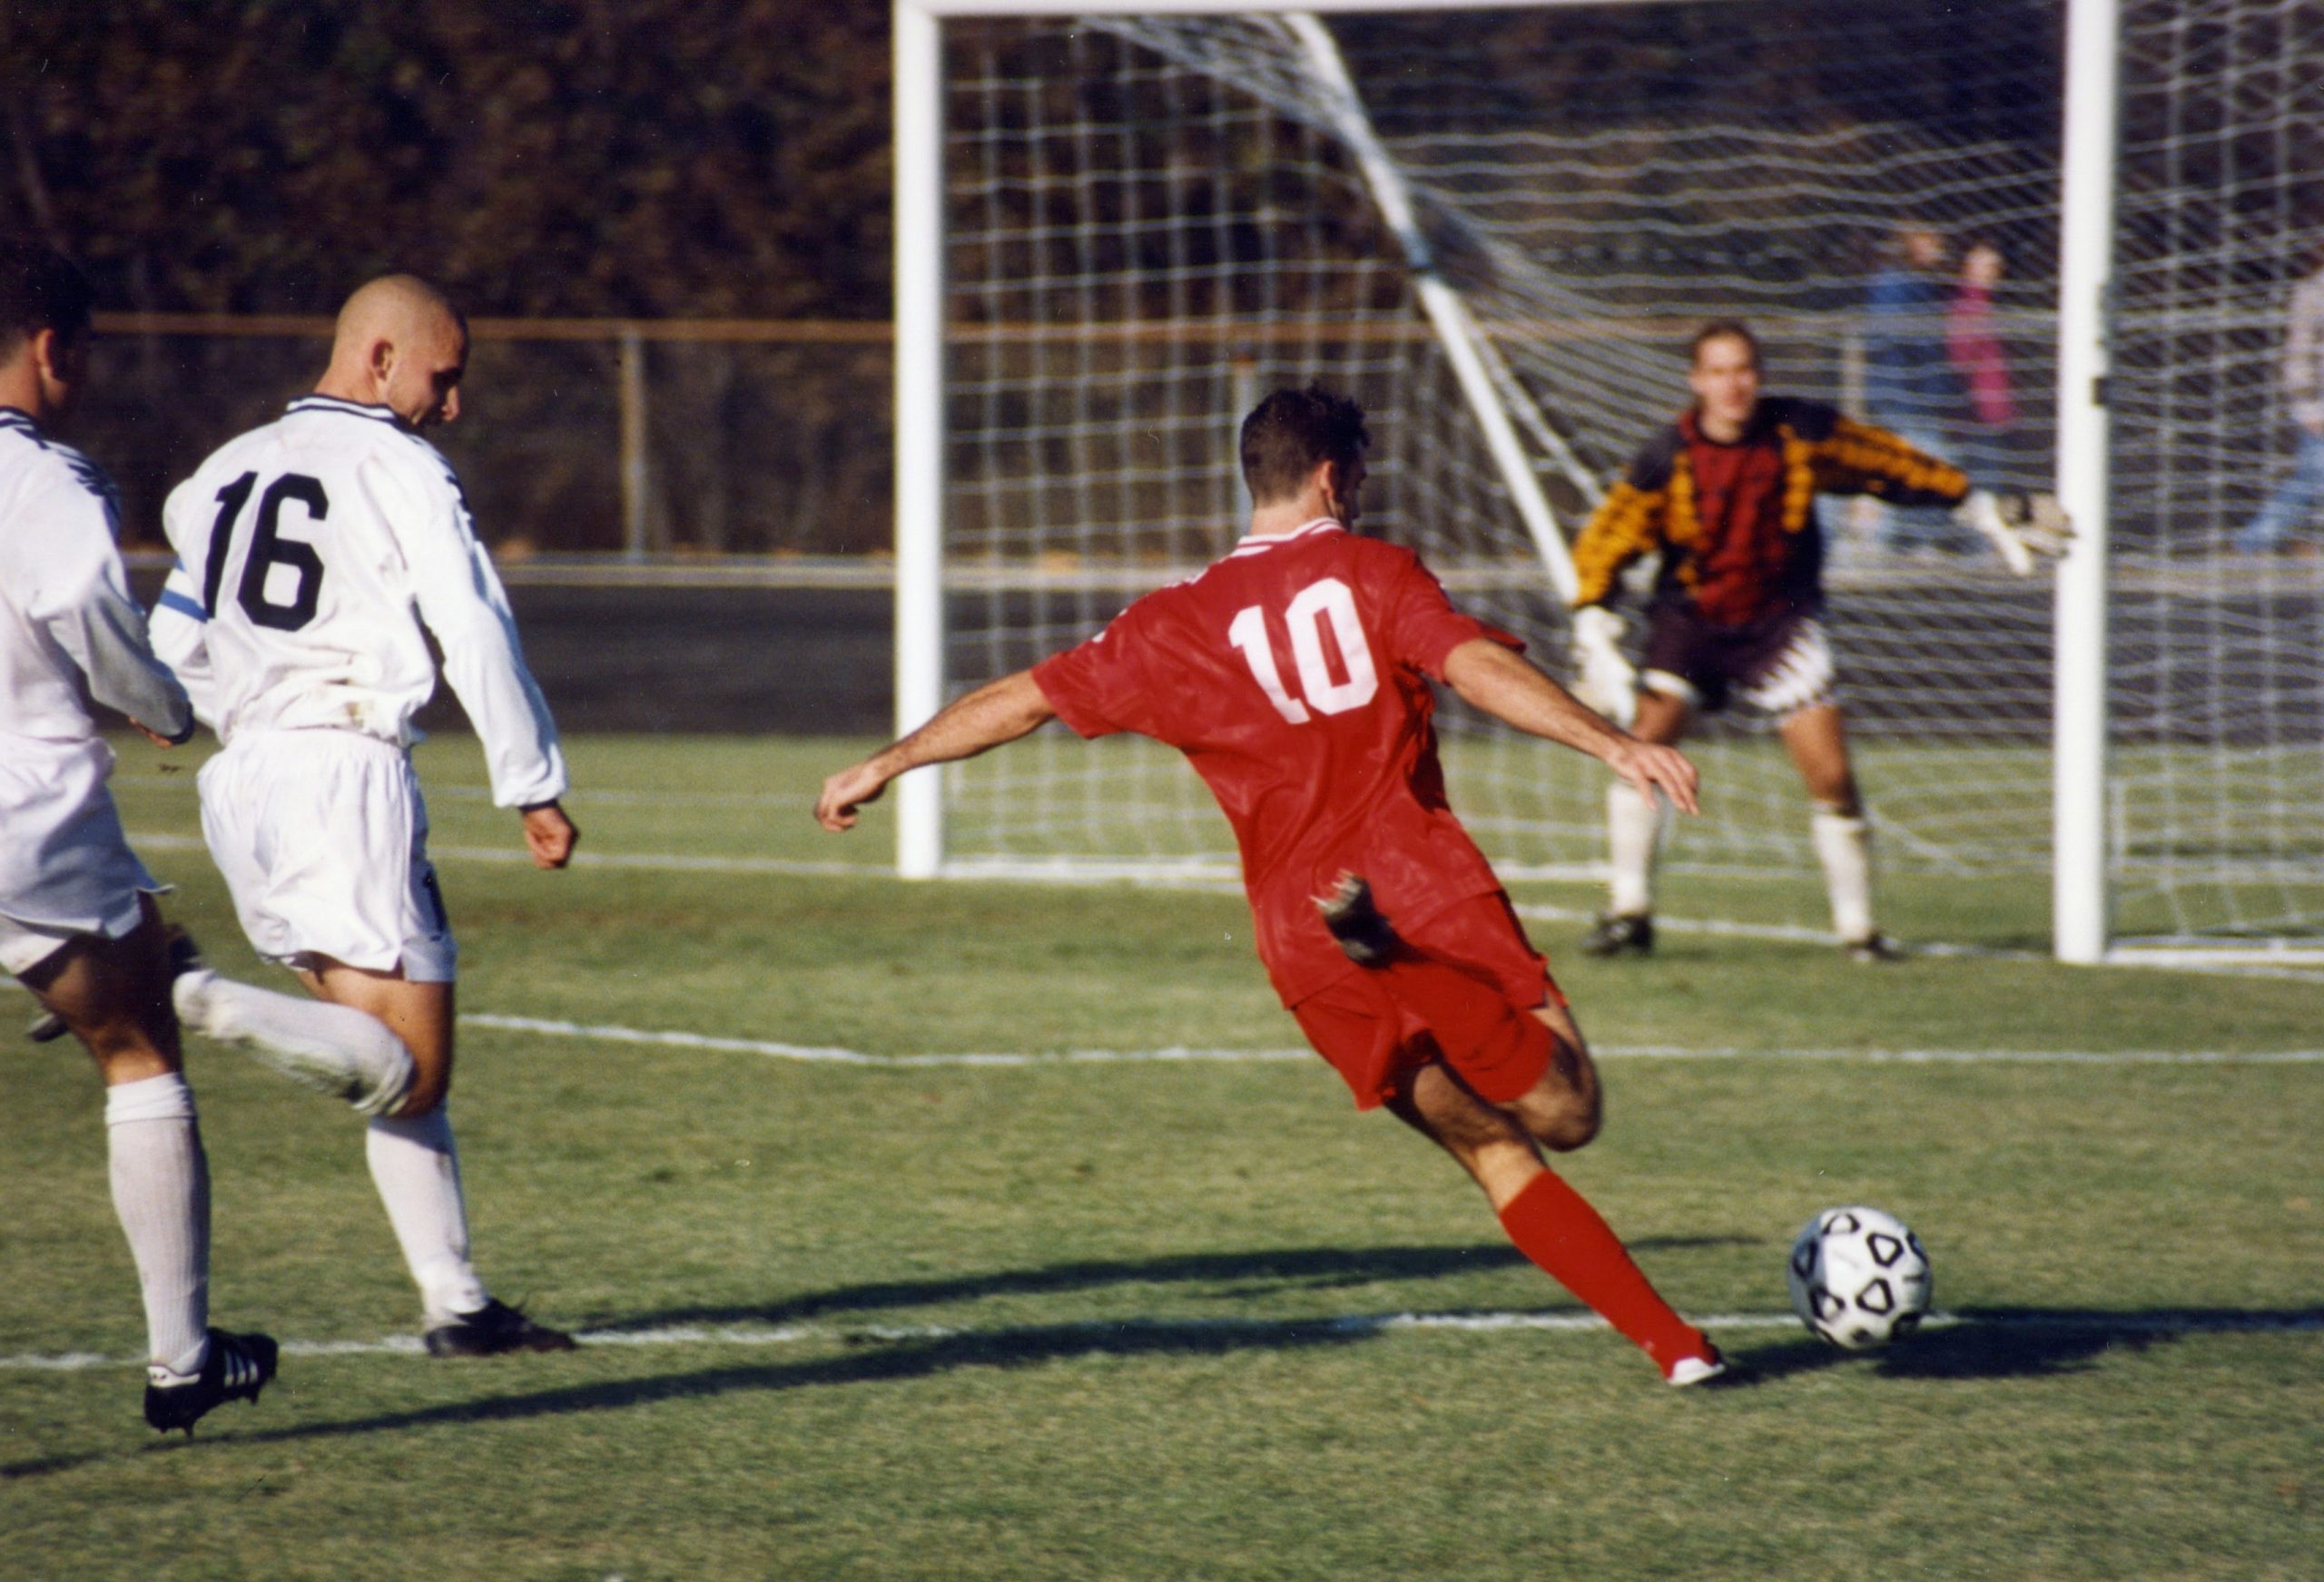 صورة عند قيام اللاعب بإرسال الكرة يتم احتساب خطأ عليه اذا لامست قدمه خط البداية او تعداه